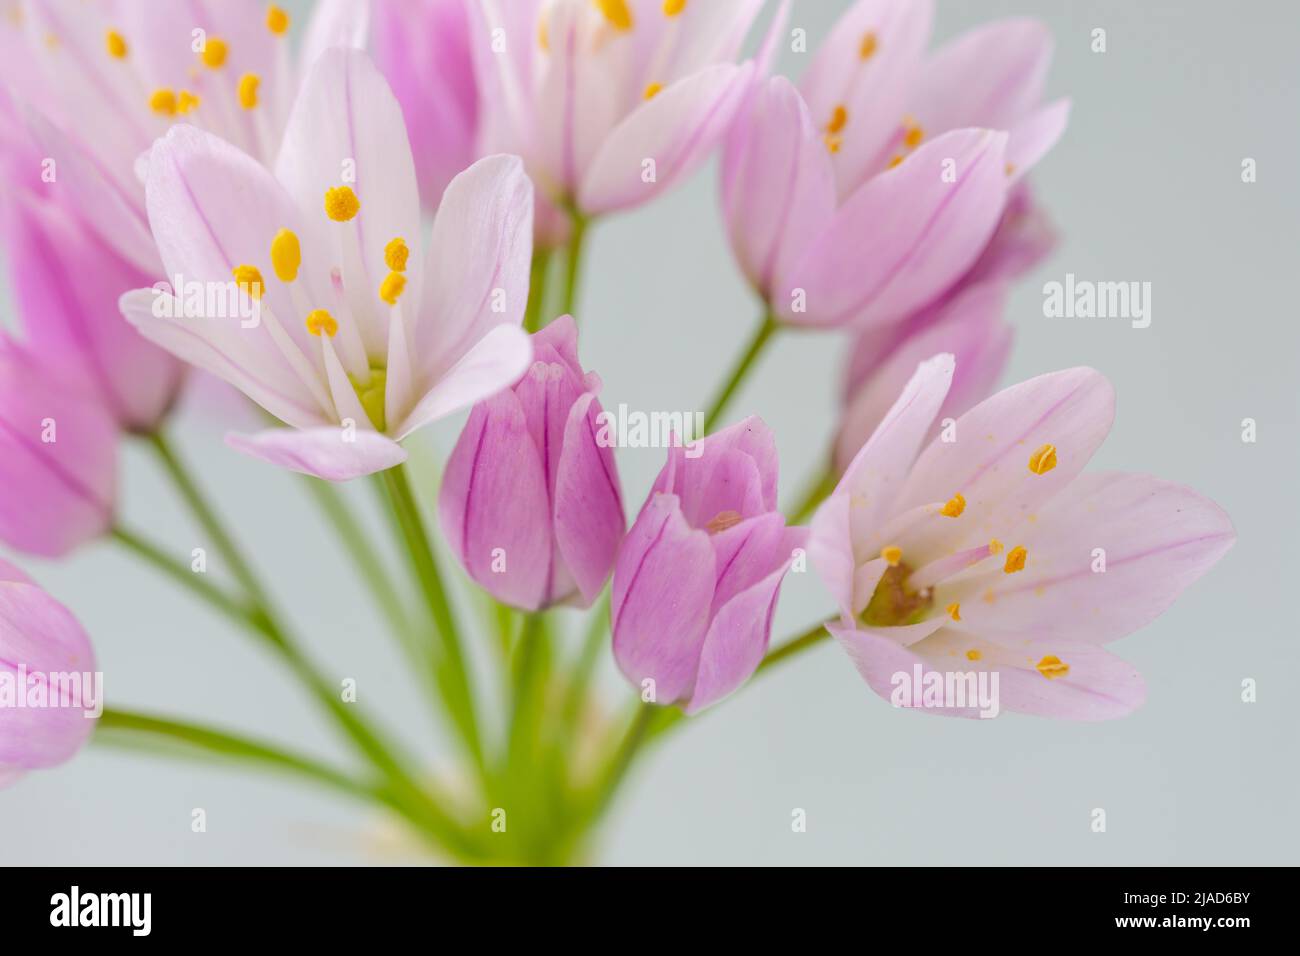 Particolare di piccoli fiori di porro all'aglio (allio) dai colori tenui e dalle tinte gialle Foto Stock